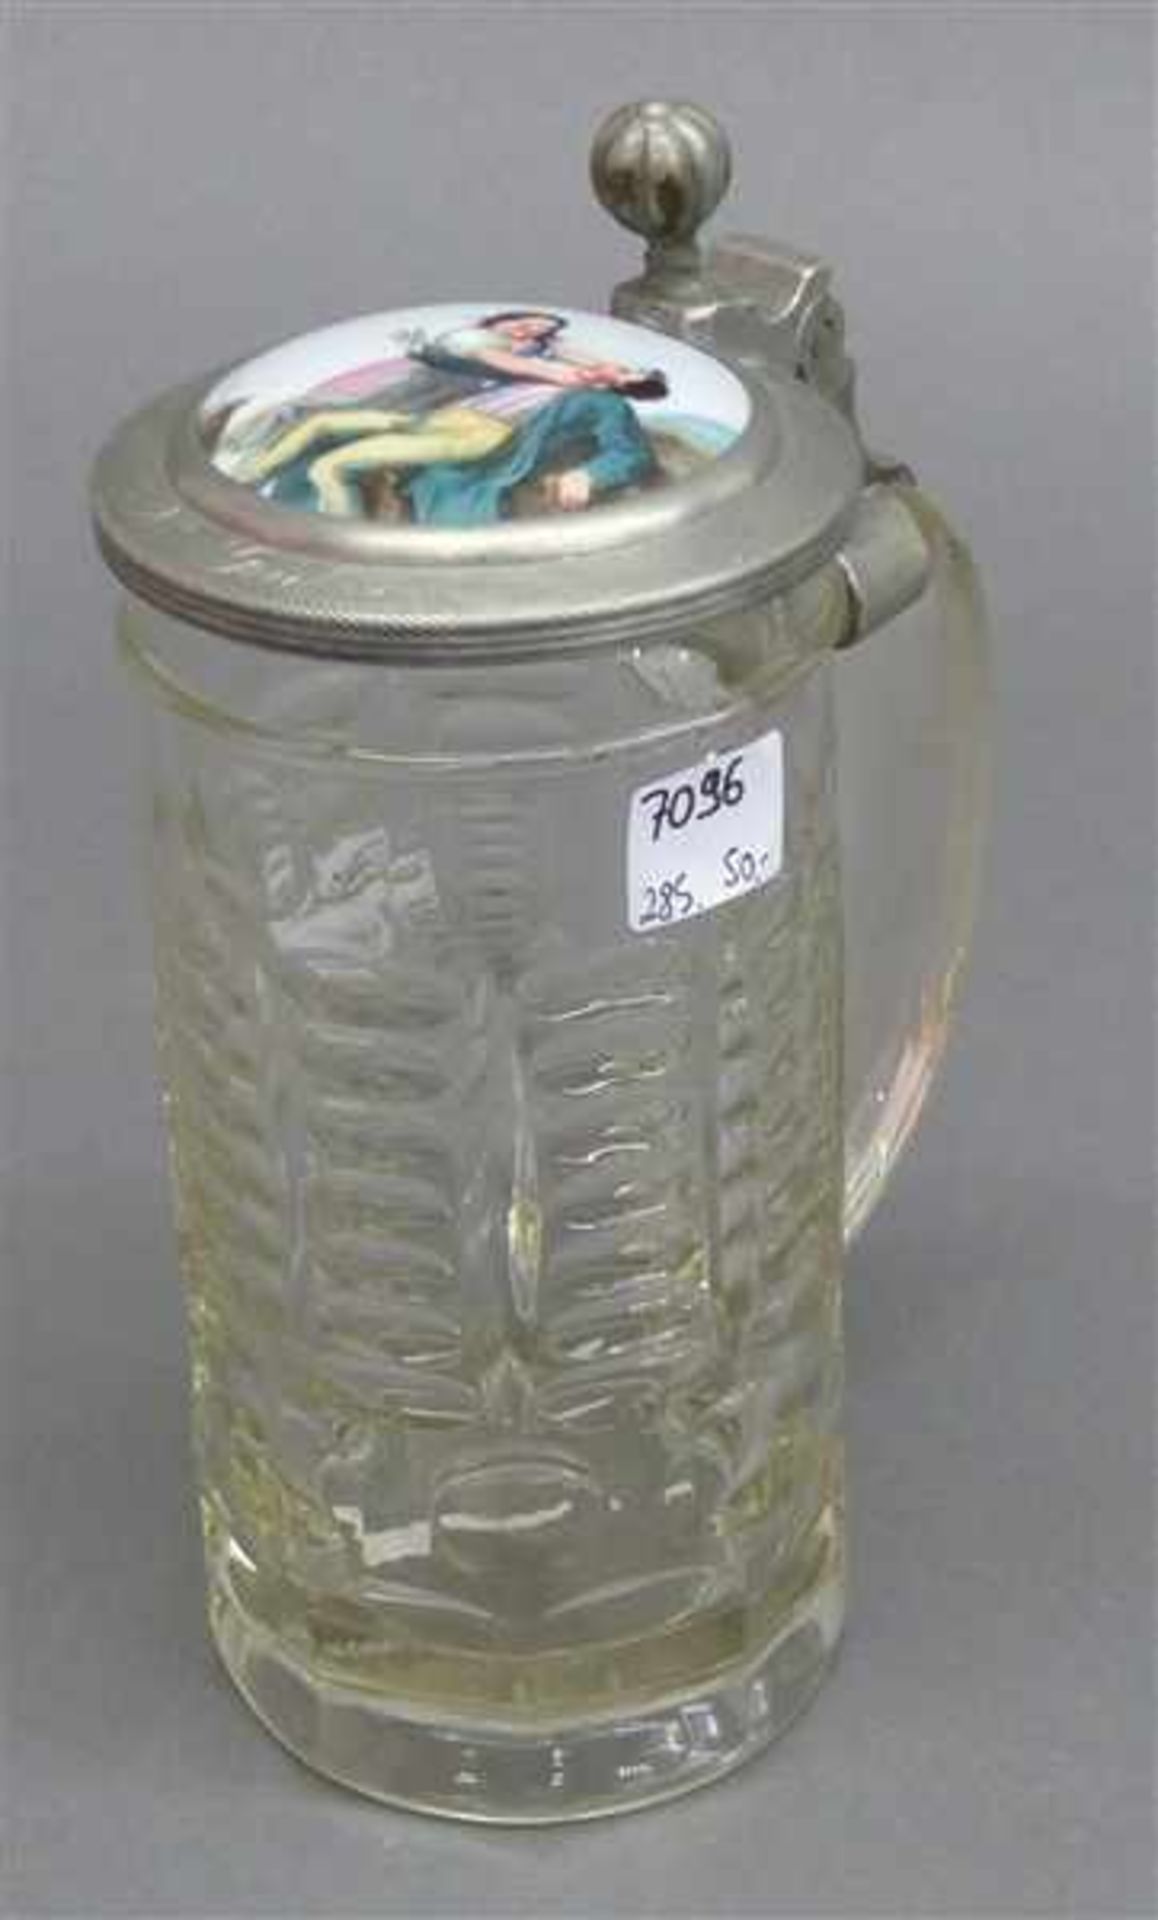 Pressglaskrug0,5 Liter, farblos, um 1900, Zinndeckel mit bemaltem Porzellaneinsatz, h 21 cm,